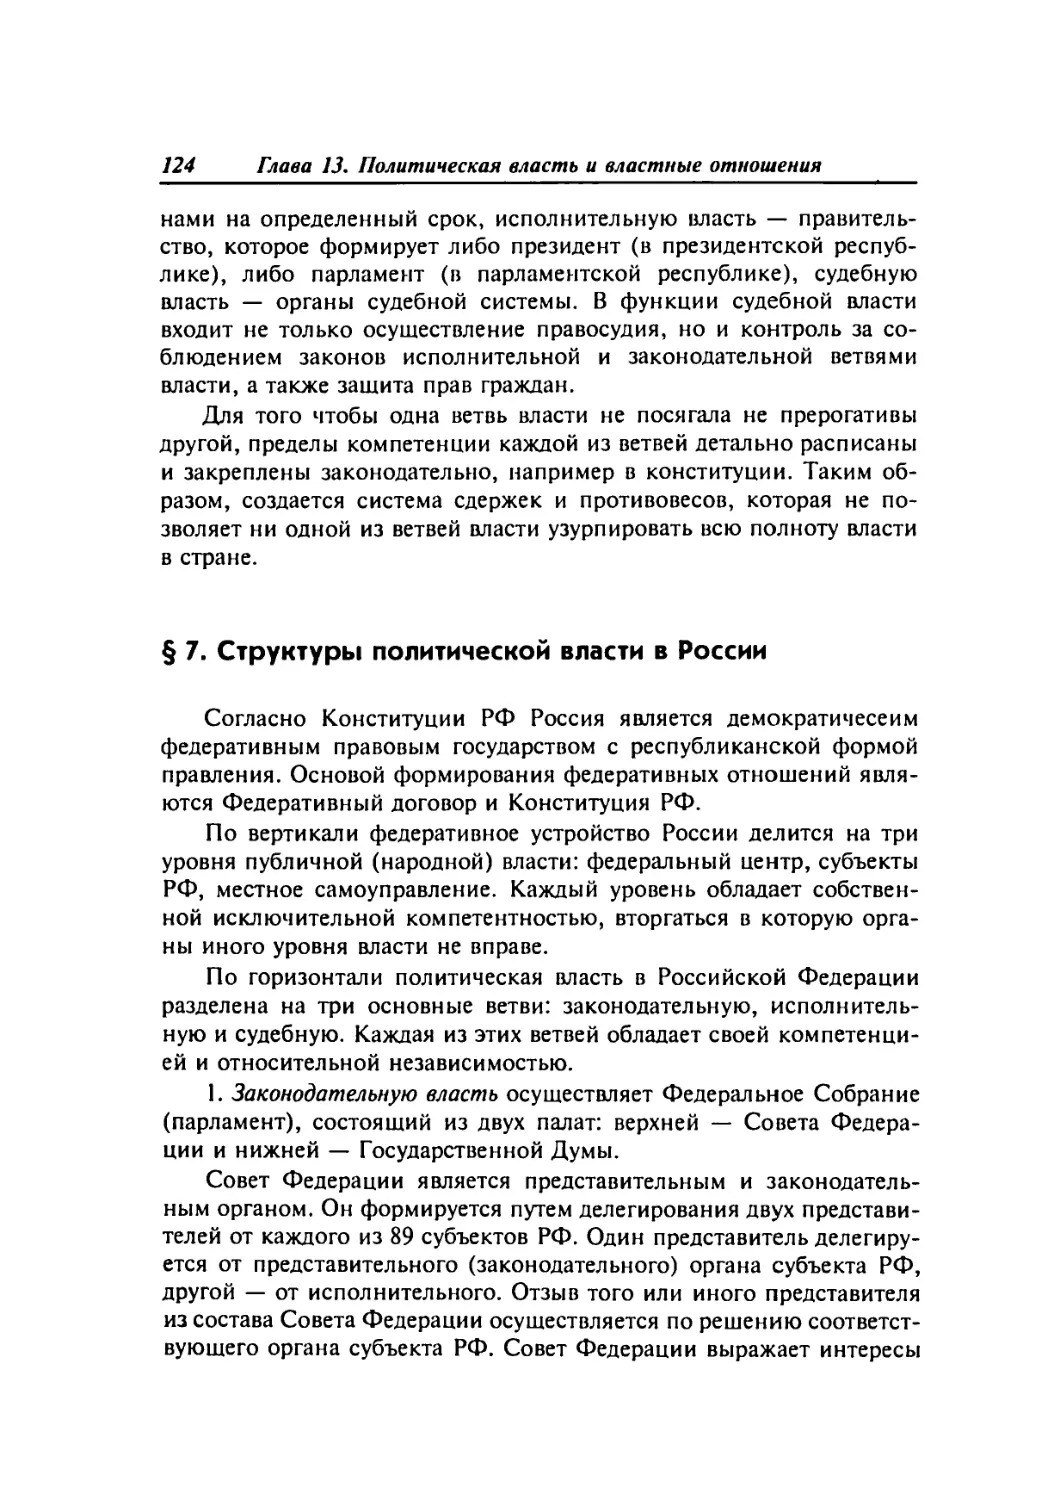 § 7. Структуры политической власти в России